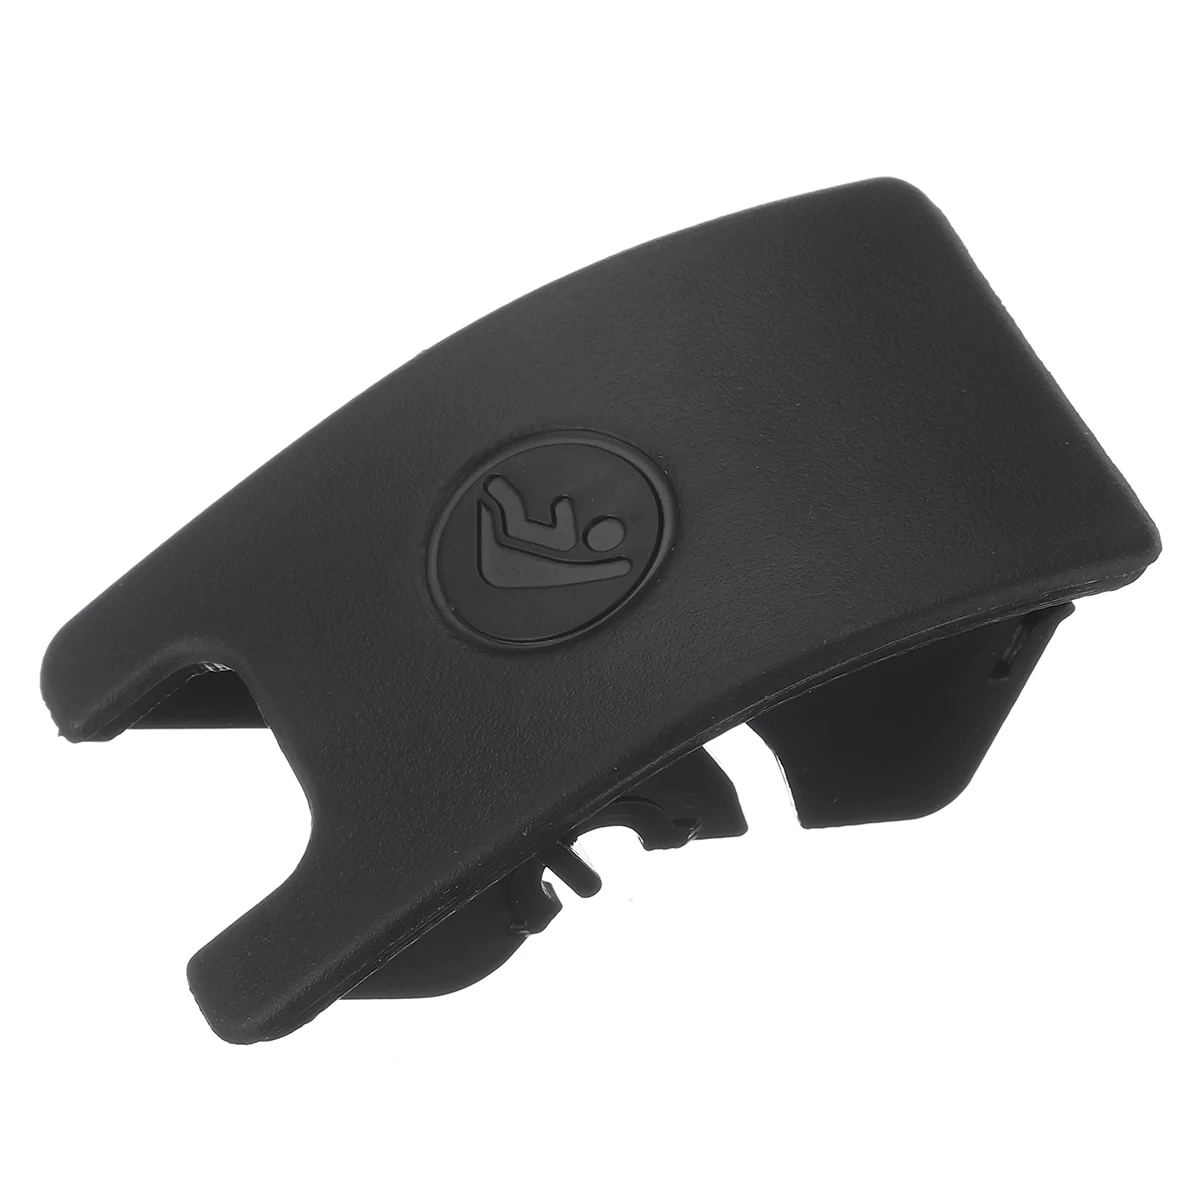 Черный/серый Автомобильный задний детский якорь безопасности Isofix слот Накладка для AUDI A4 B8 A5 8T0887187 автомобиль ISOFiX чехол детское удерживающее устройство